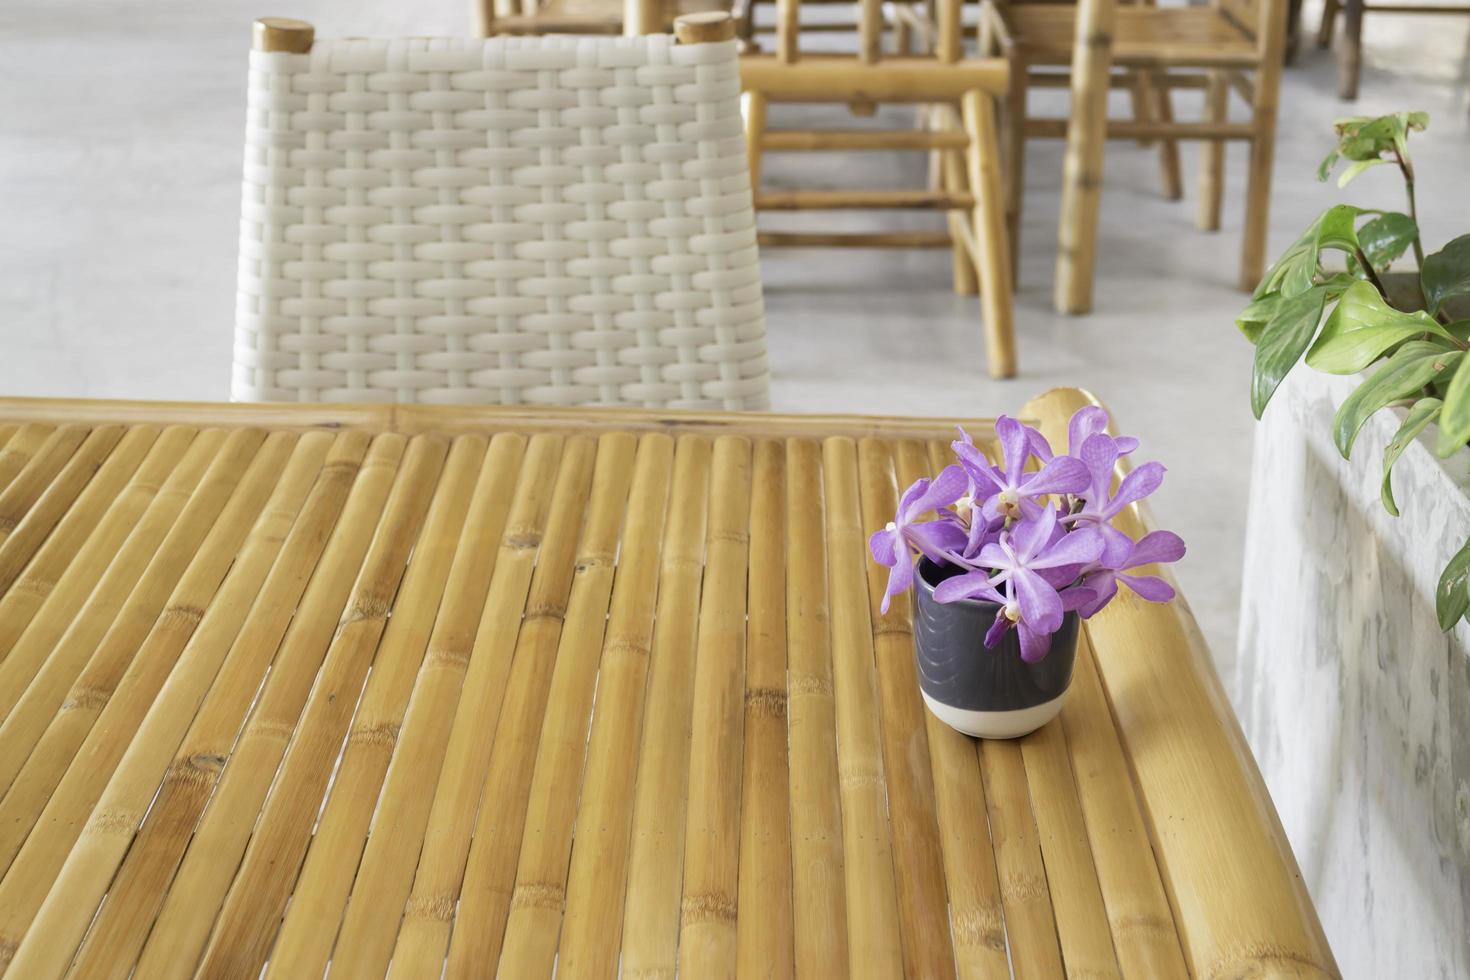 meubles en bambou avec arrangement de fleurs violettes photo